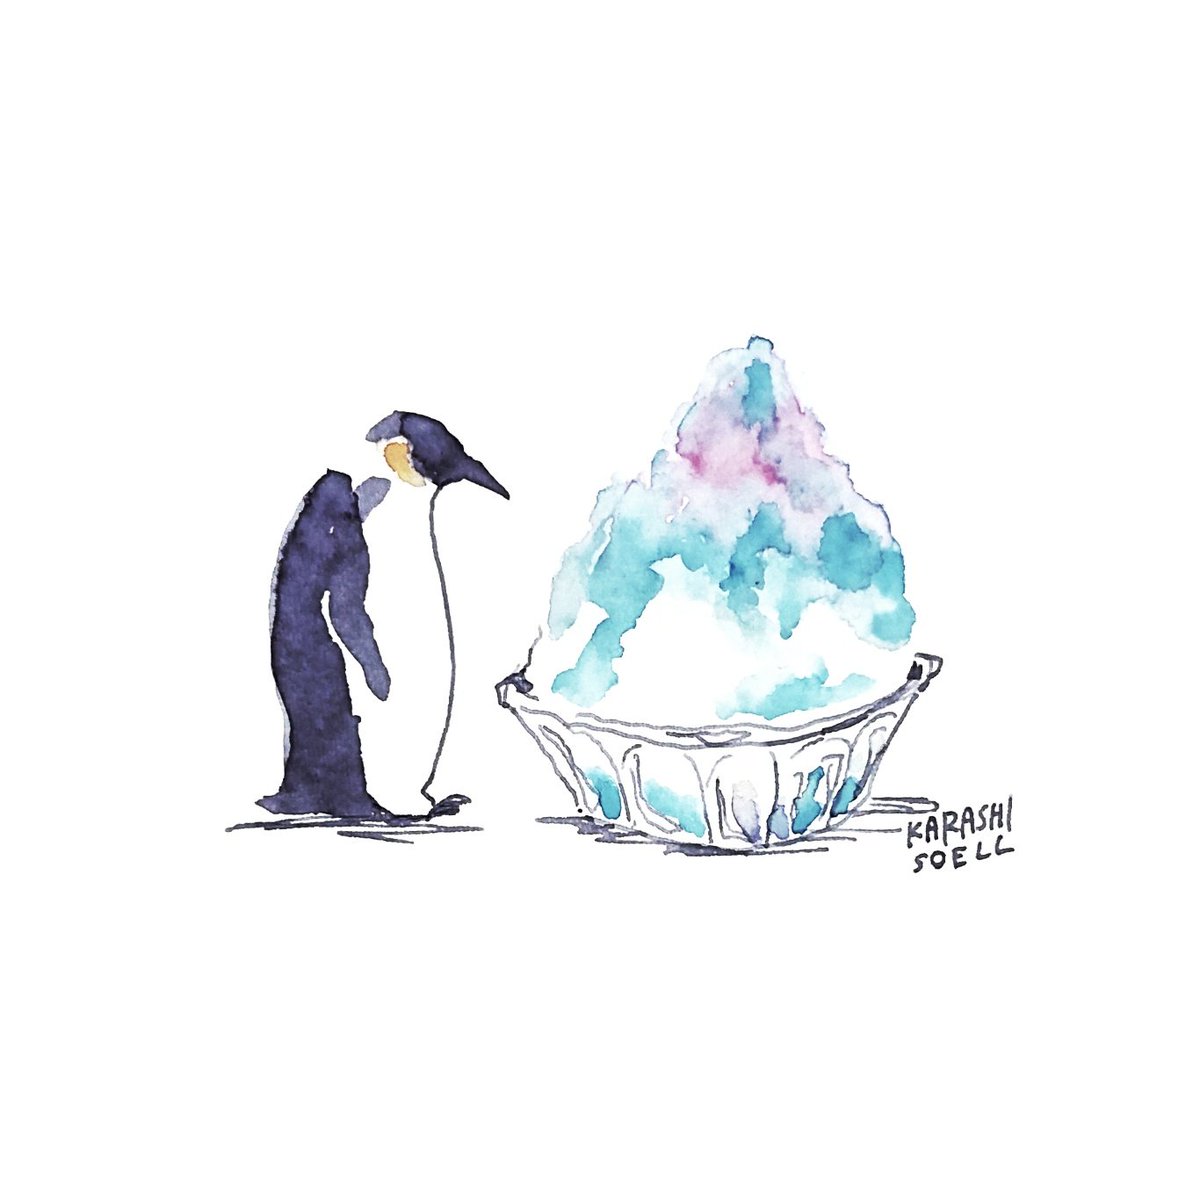 カラシソエル イラストレーター 今日のイラスト ペンギン かき氷と出会う 今日のカラシイラスト T Co Jzb2lyrt5t Twitter